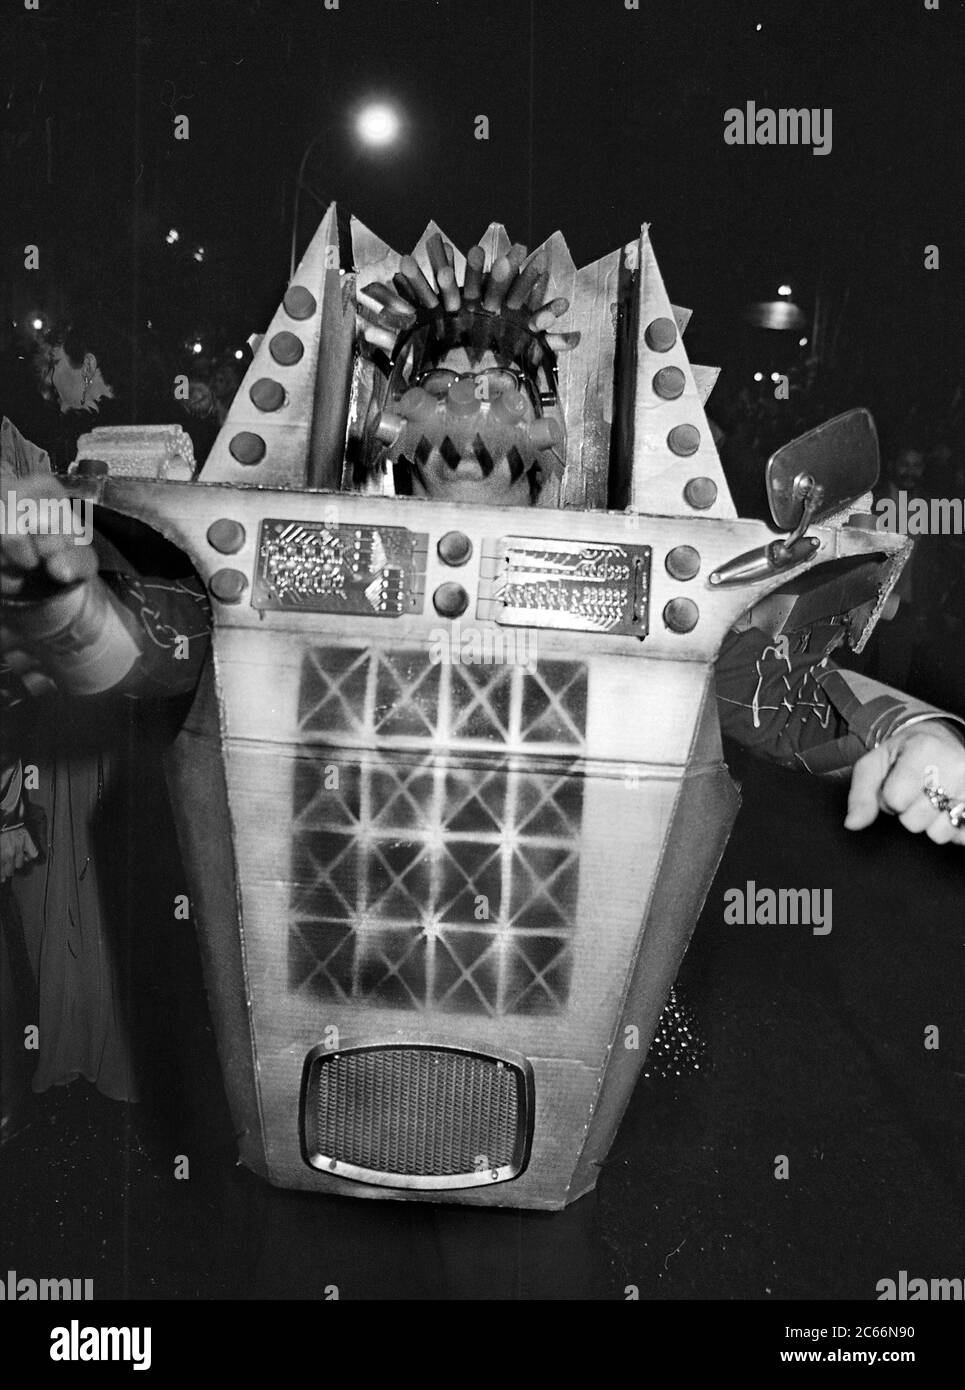 Robot fatto a mano alla Greenwich Village Halloween Parade, New York City, USA negli anni '80 fotografato con film in bianco e nero di notte. Foto Stock